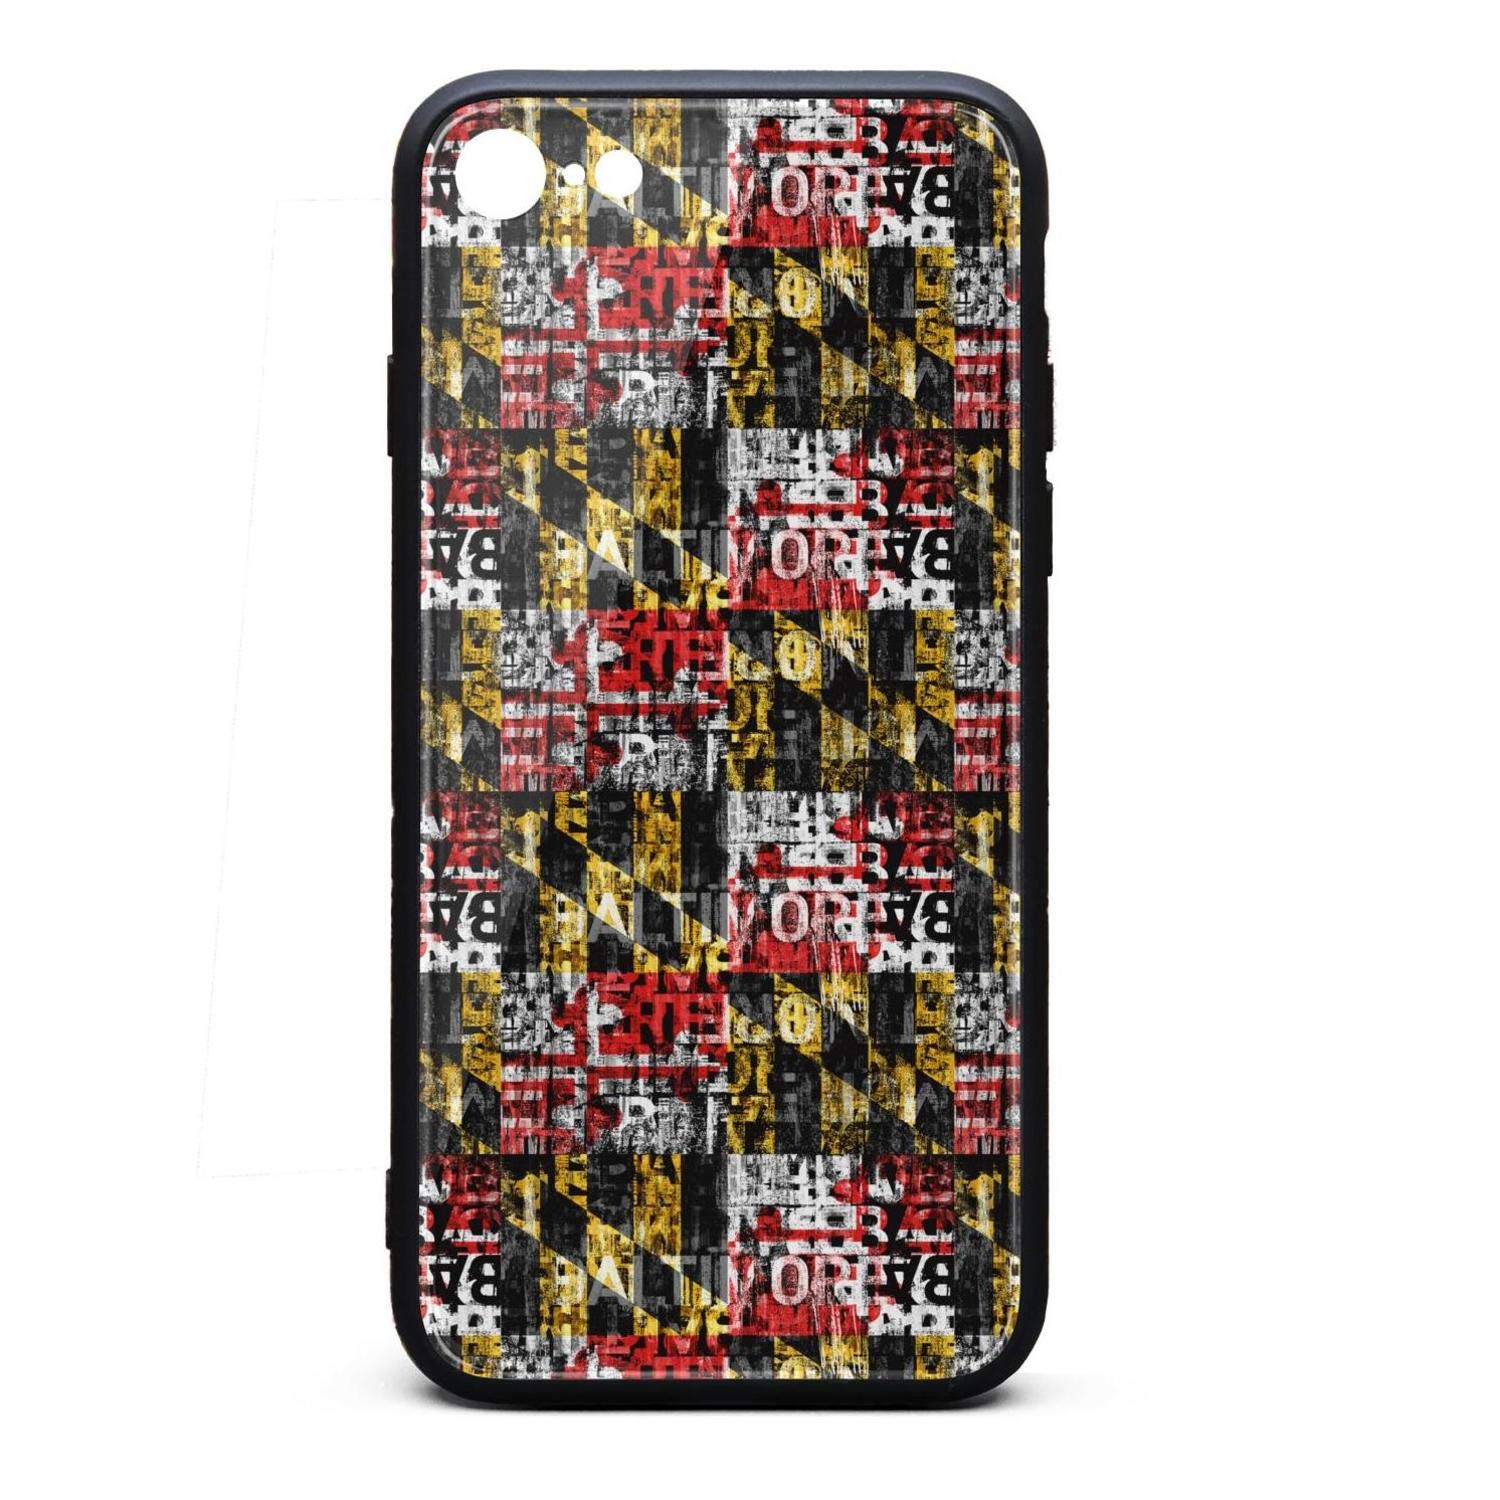 Mobile Phone Case - 1500x1500 Wallpaper - teahub.io